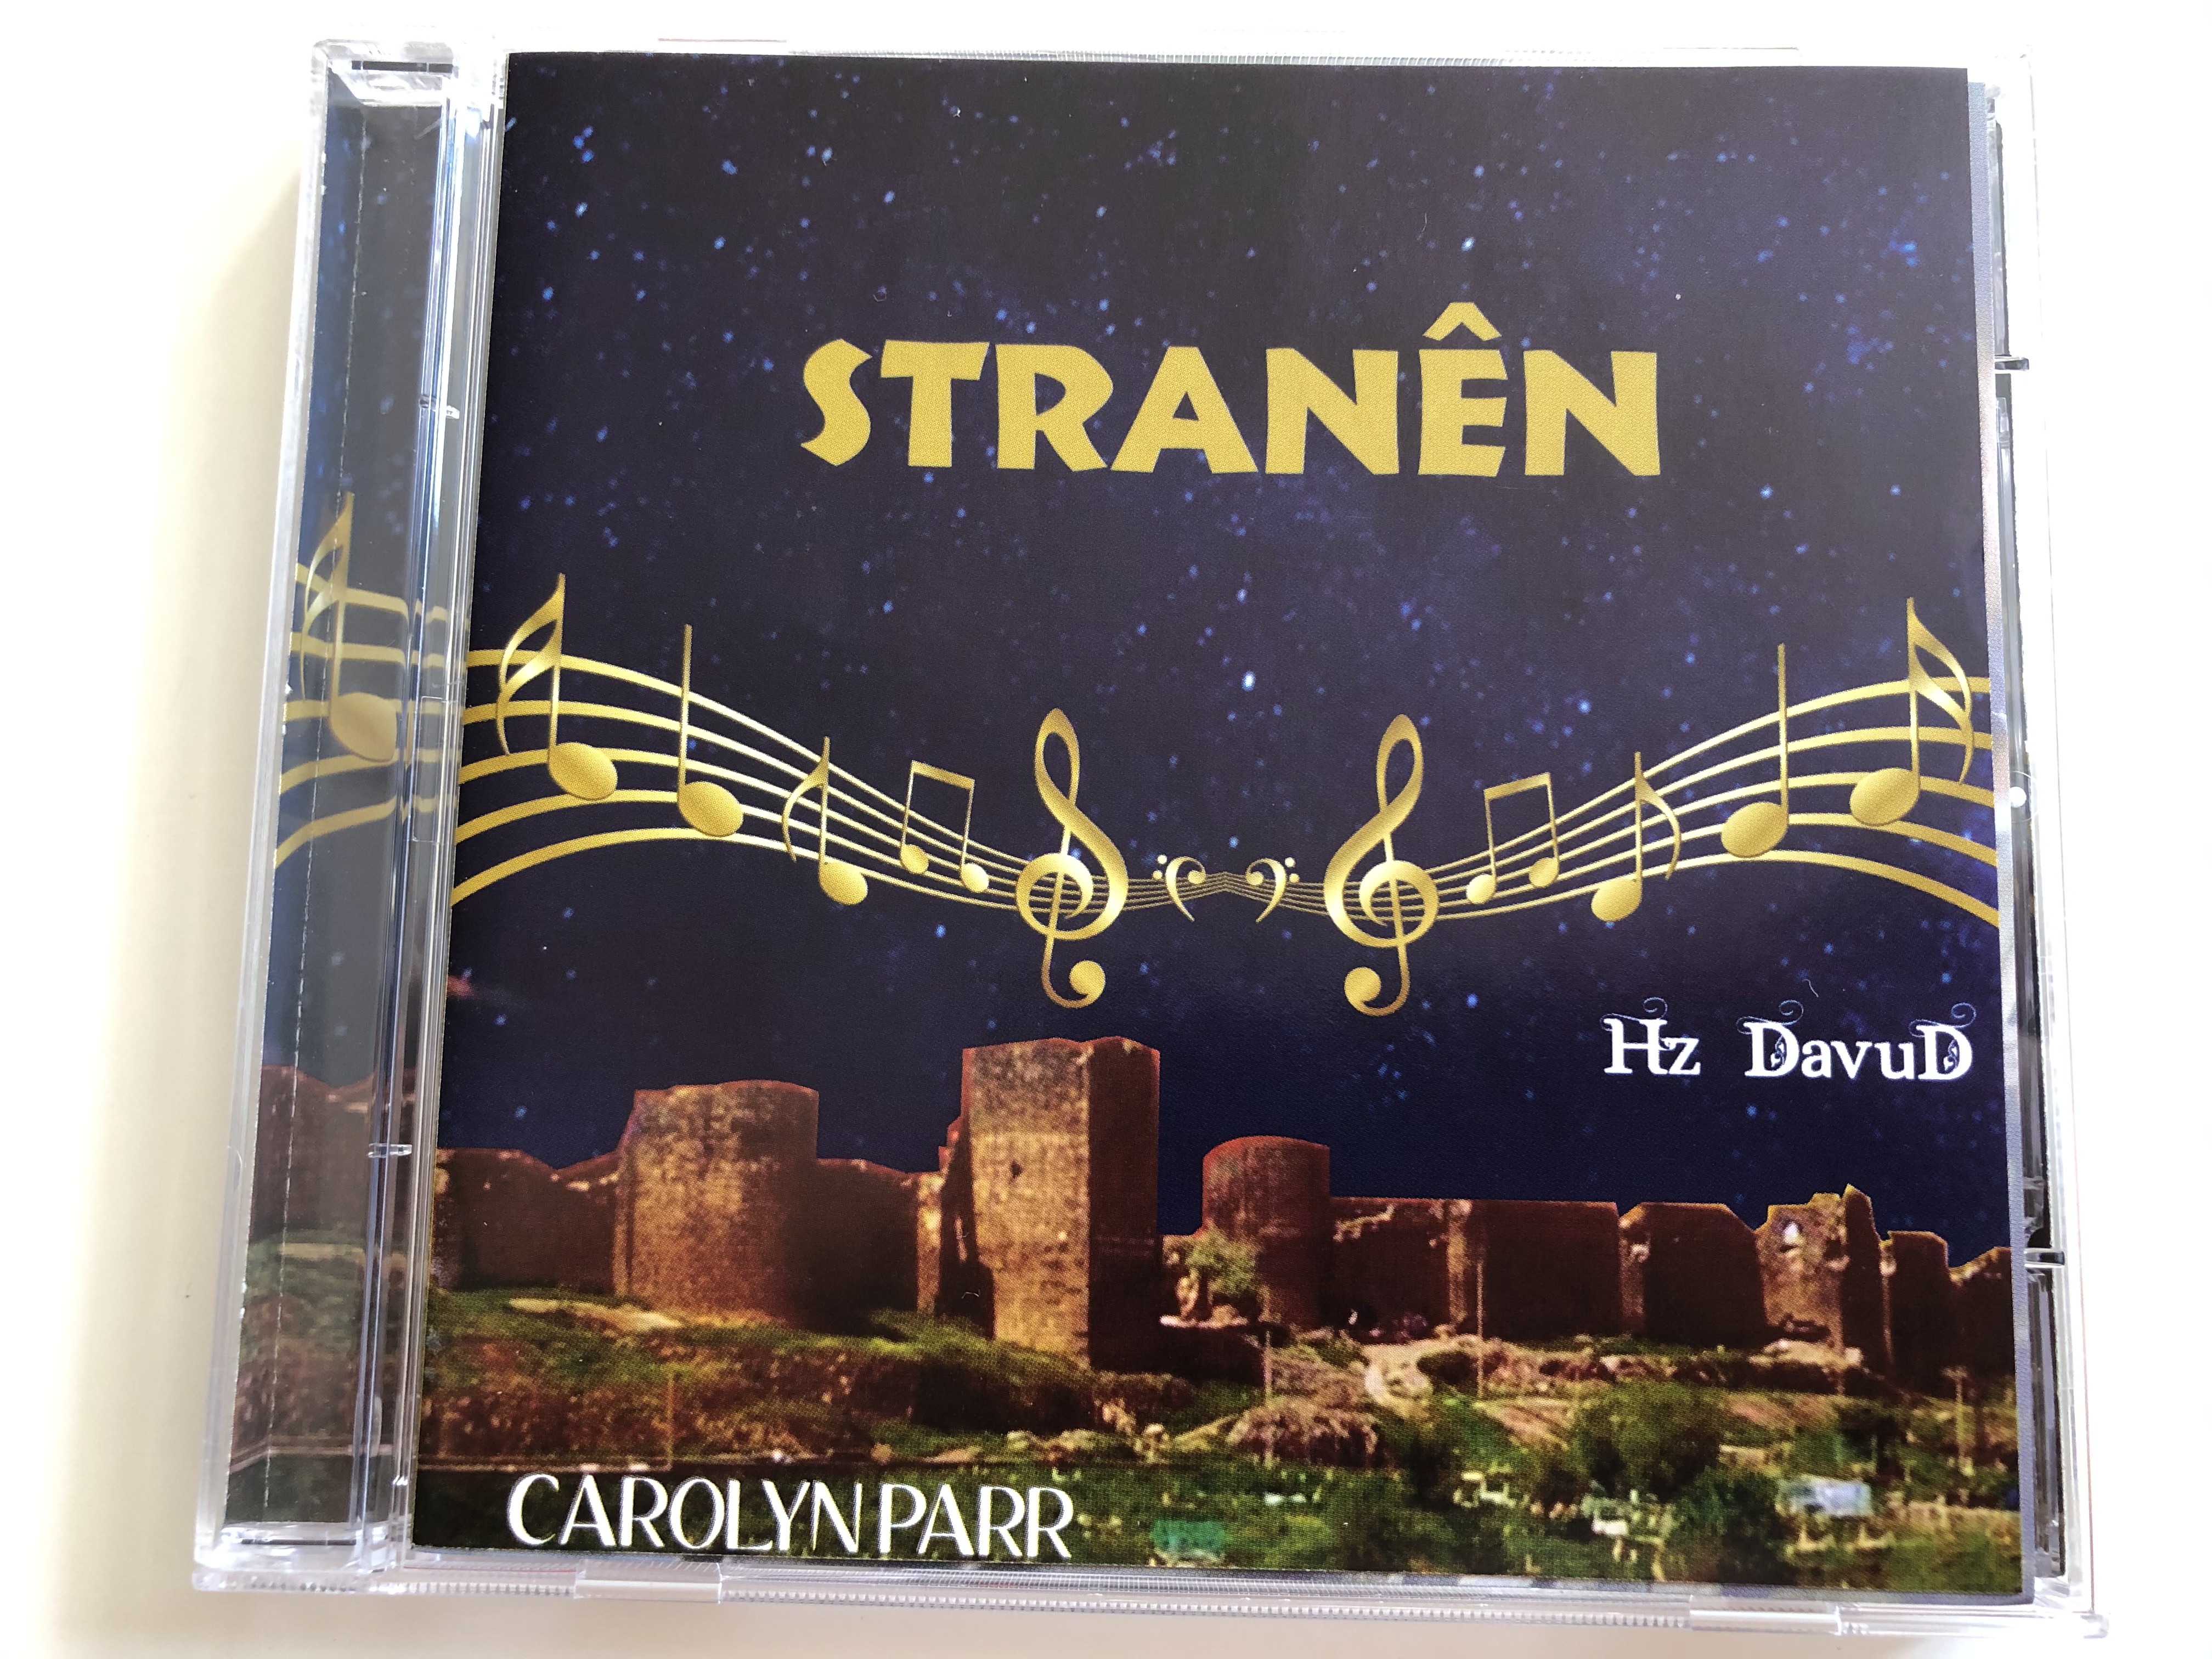 stran-n-hz-dawud-carolyn-parr-2014-audio-cd-2014-1-.jpg